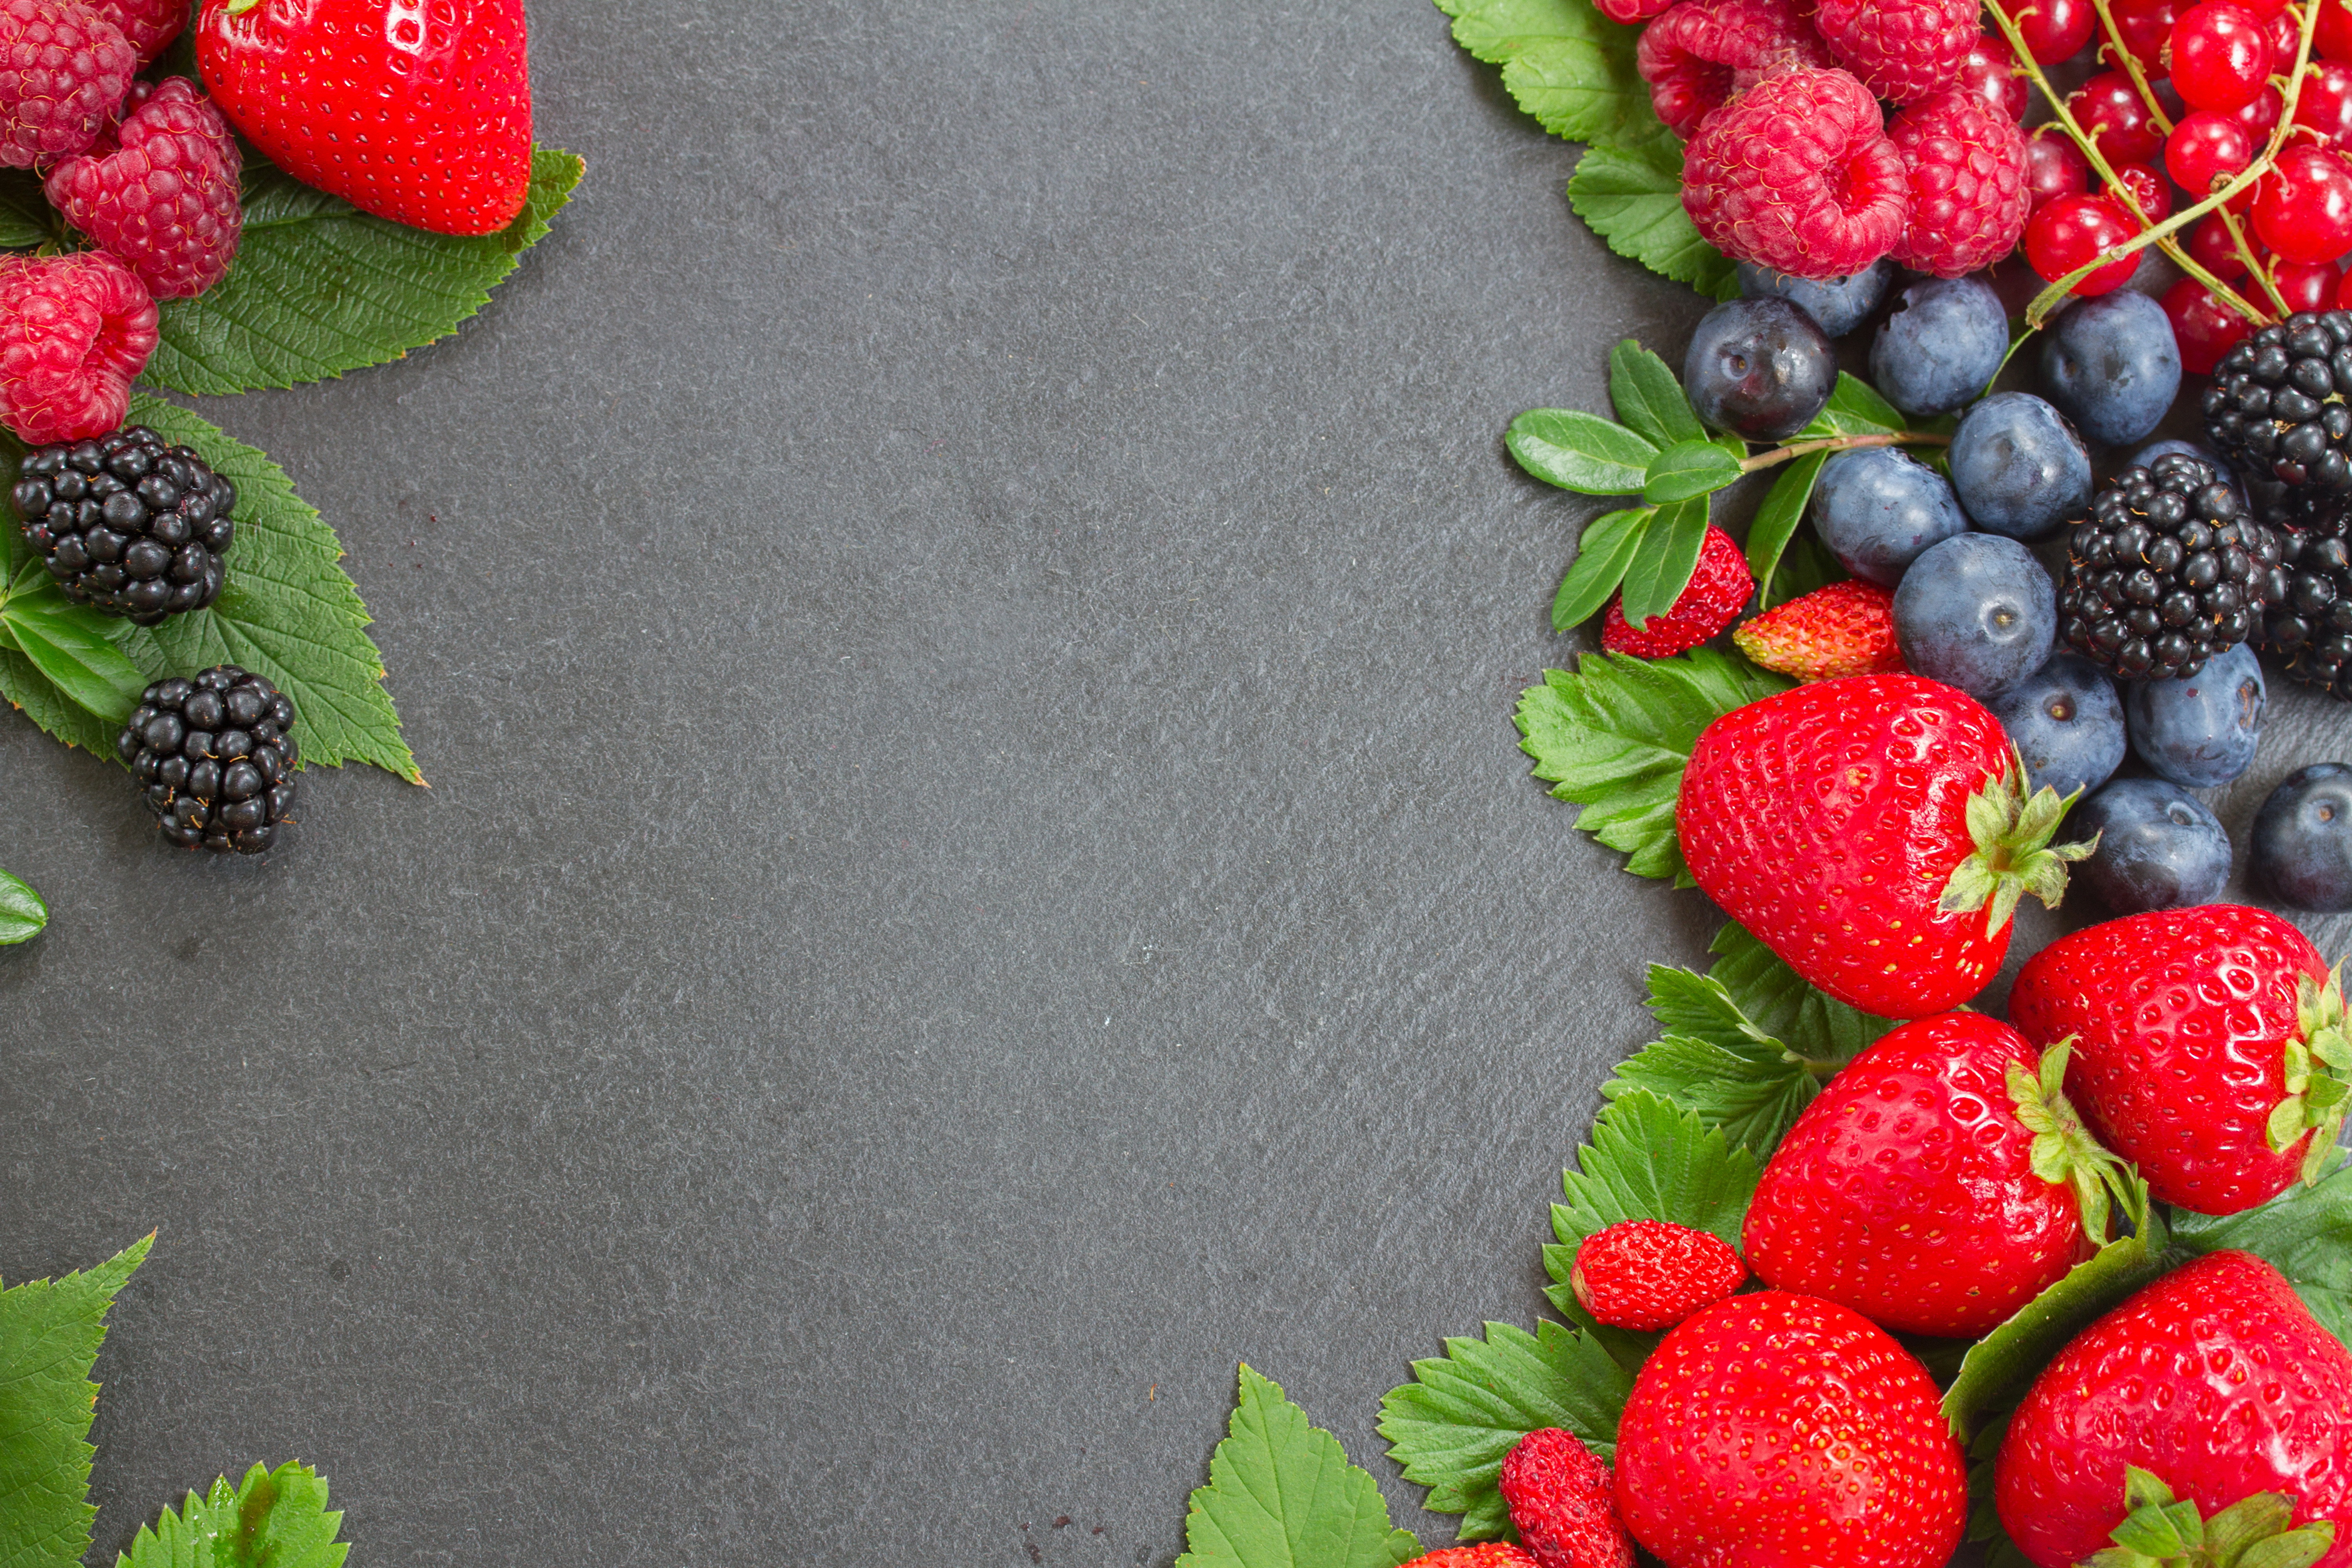 722191 免費下載壁紙 食物, 浆果, 黑莓, 蓝莓, 树莓, 草莓 屏保和圖片